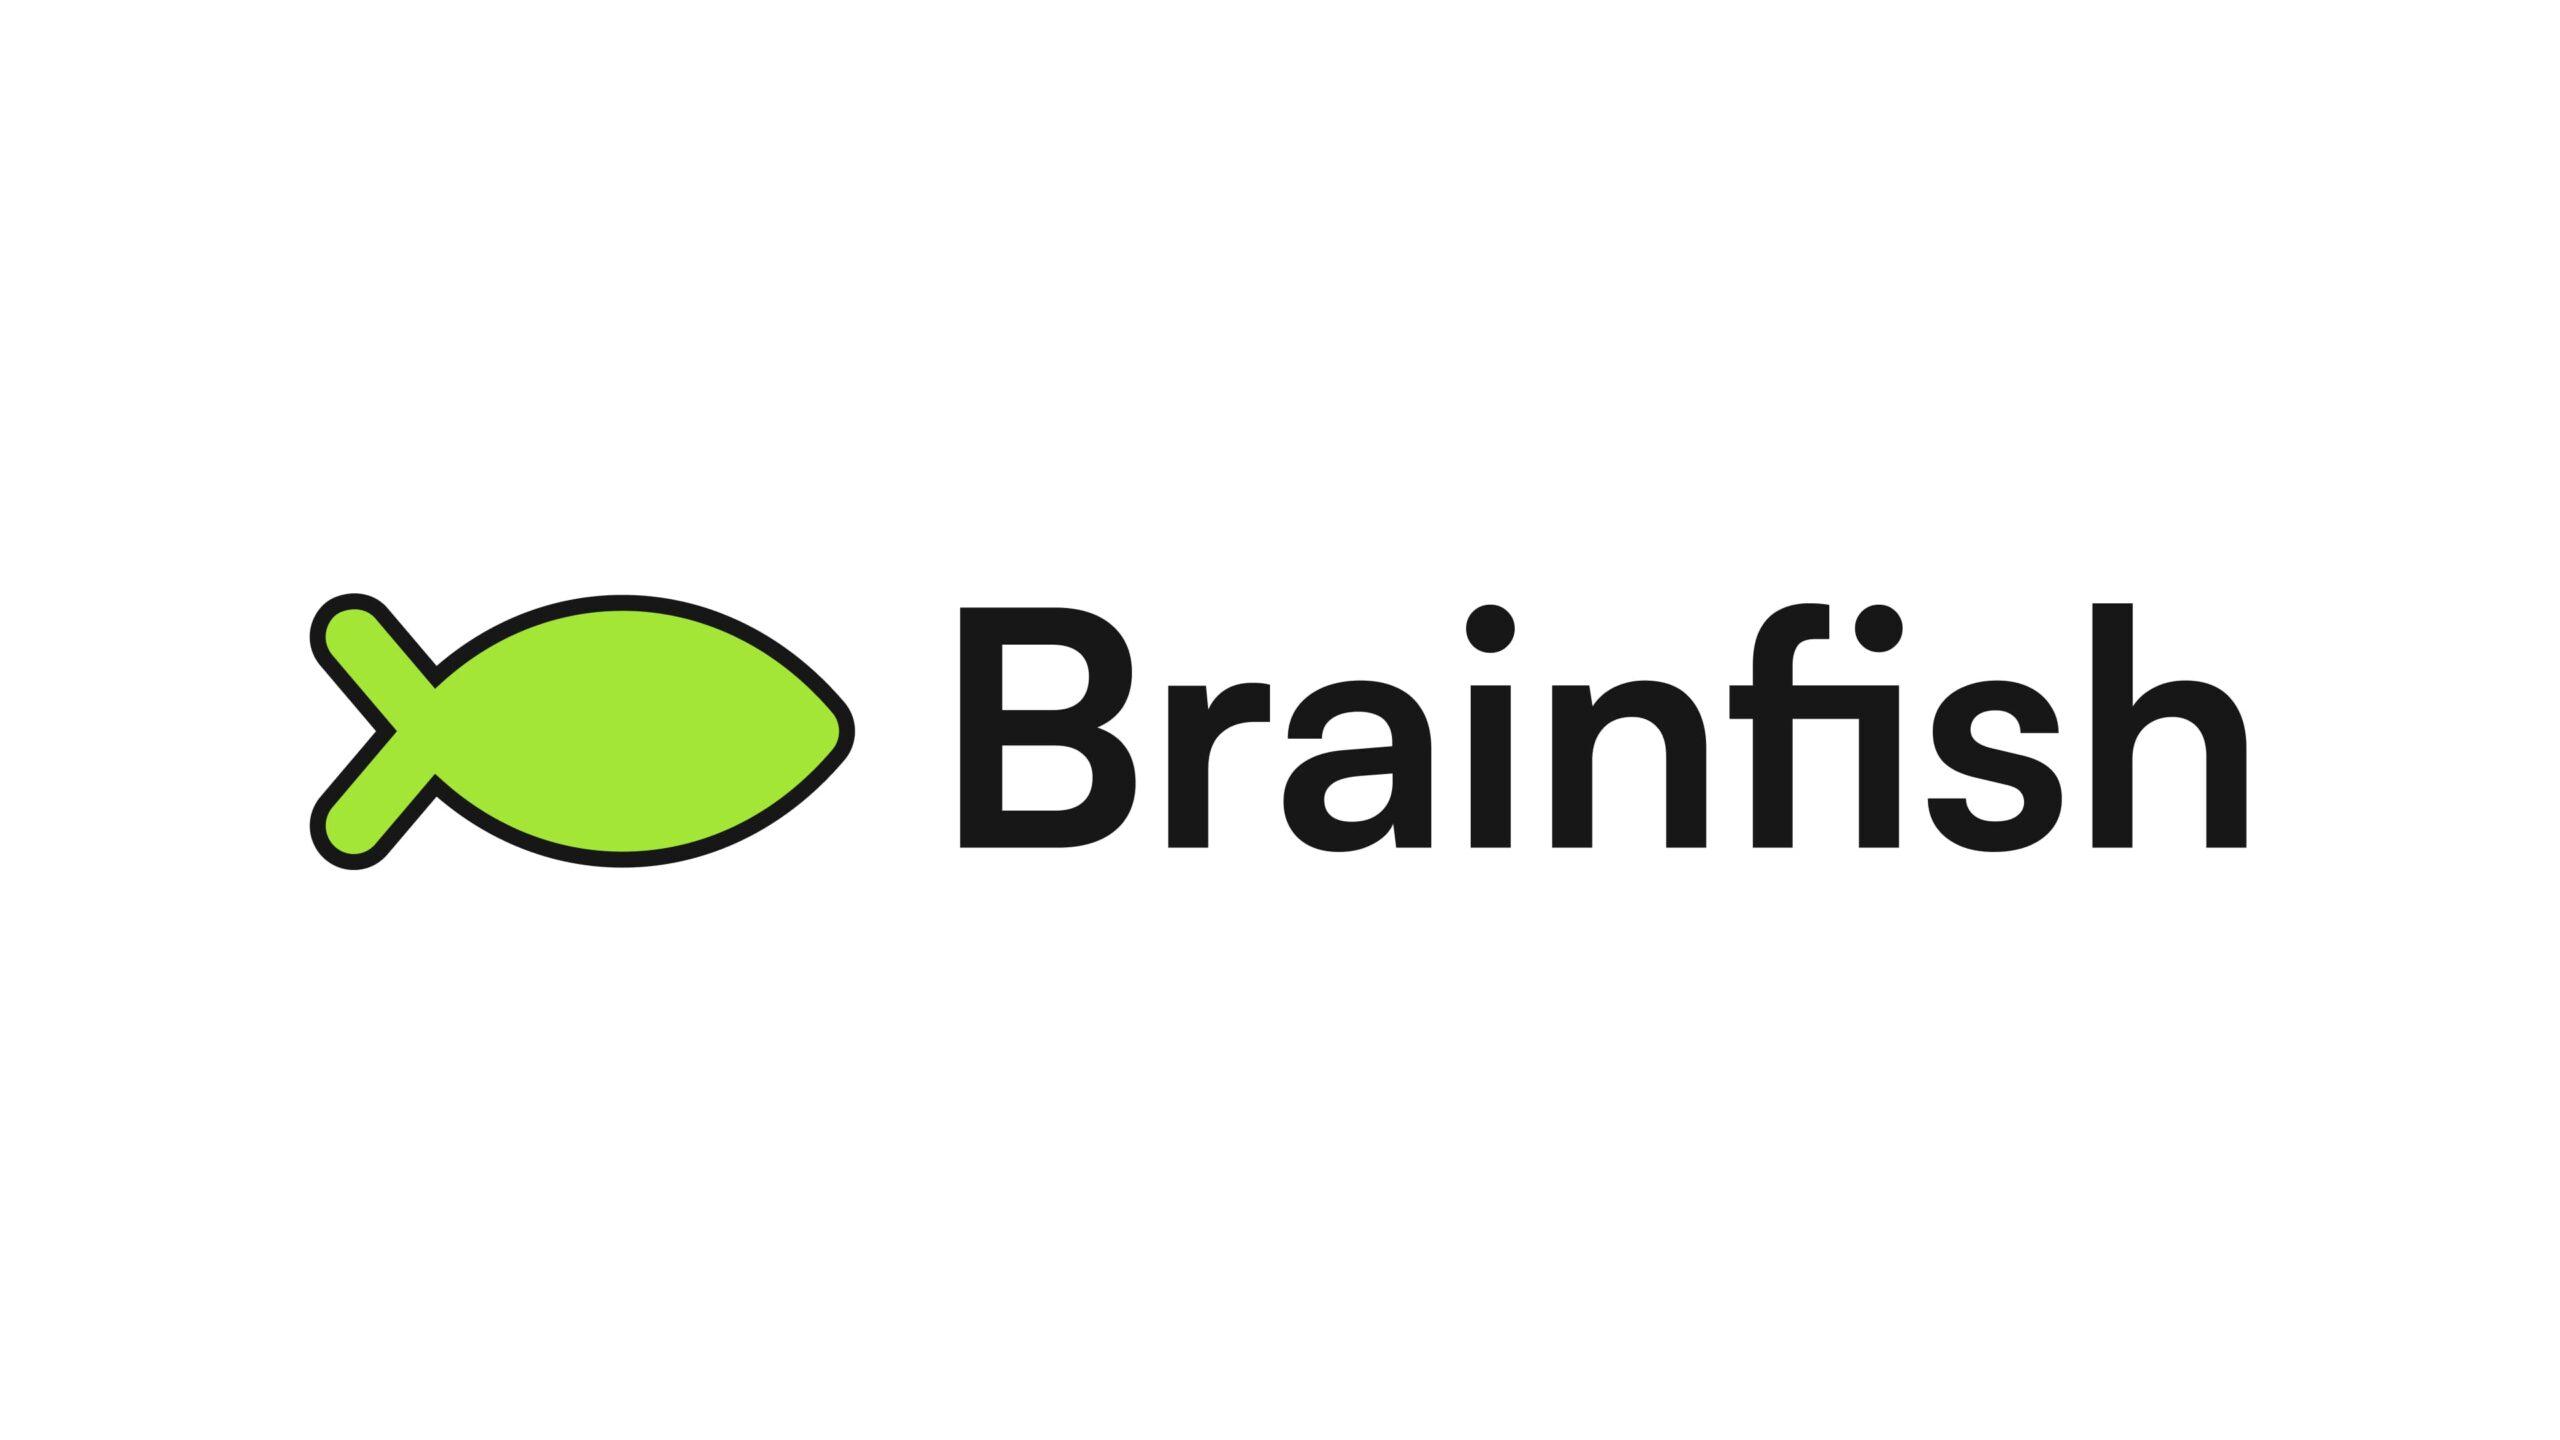 シドニーを拠点とするBrainfish、250万ドルの資金調達を実施